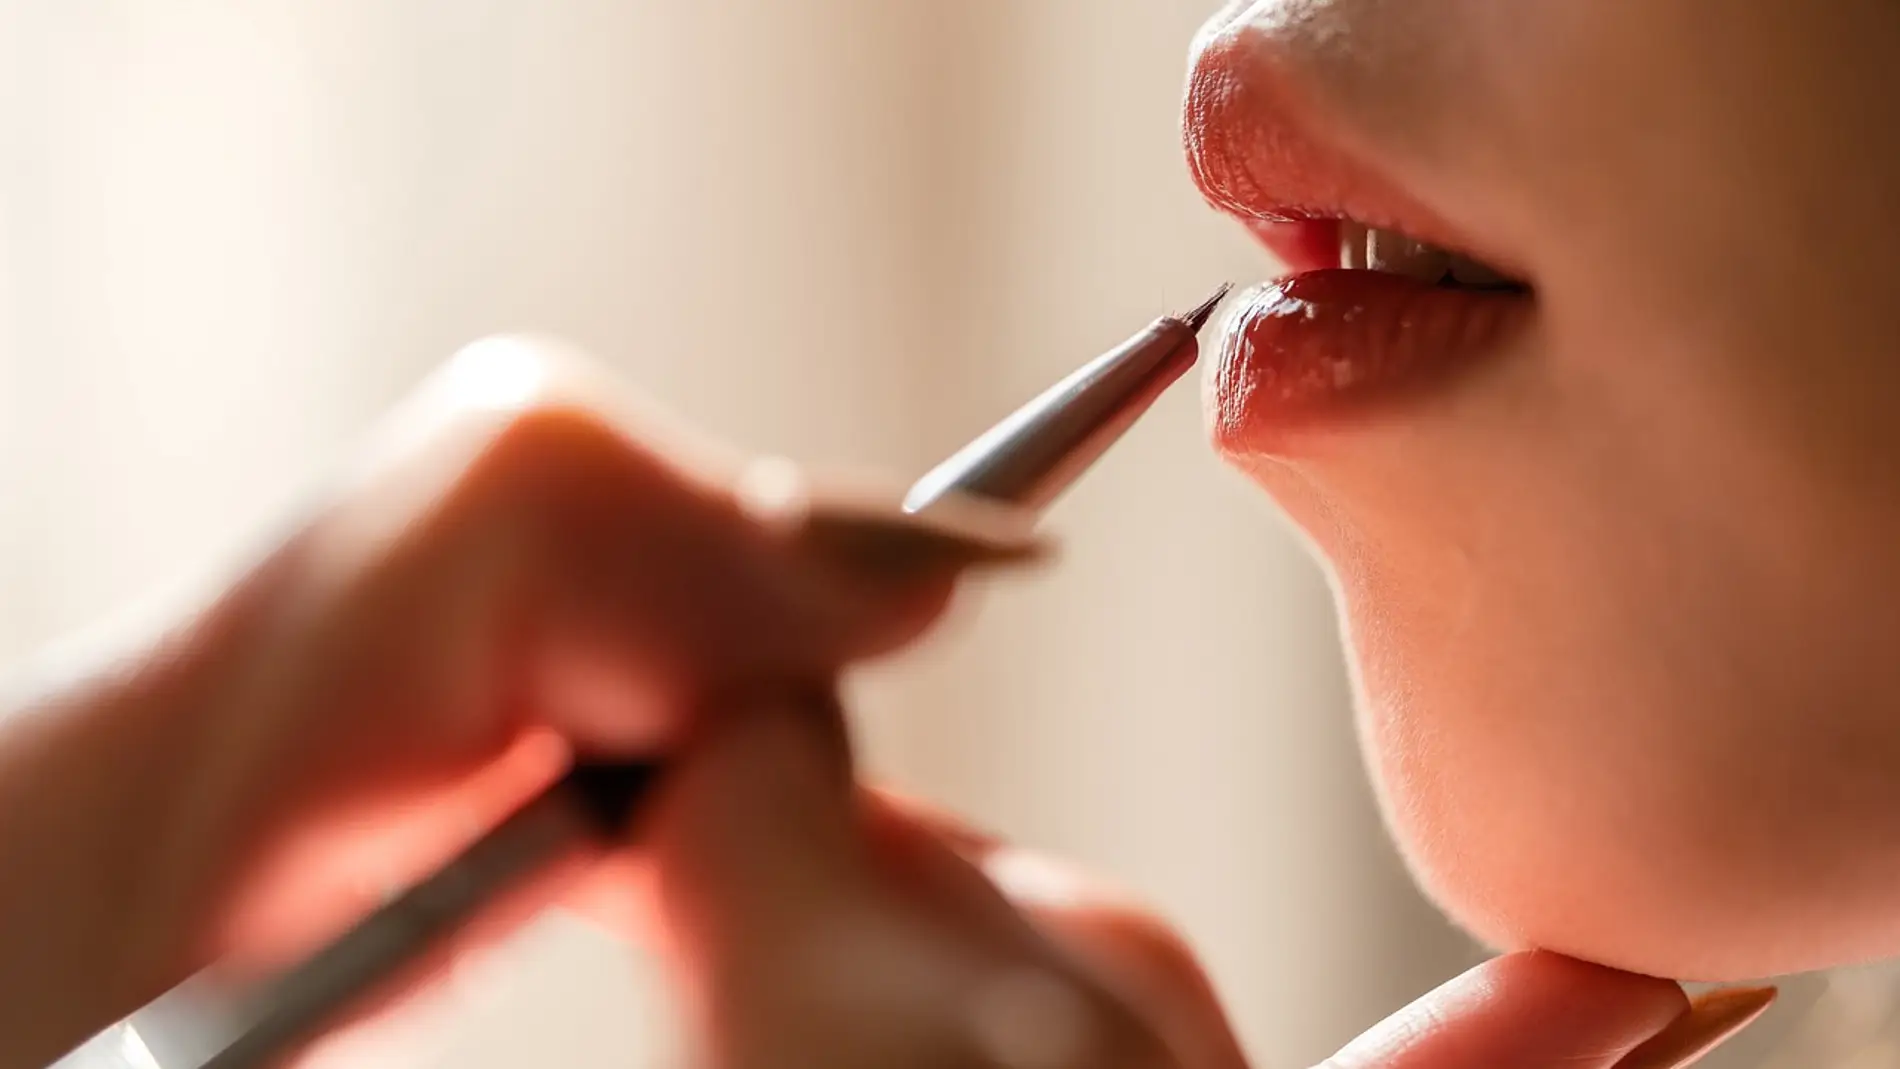 Los riesgos de aumentarse los labios, según una especialista en medicina estética